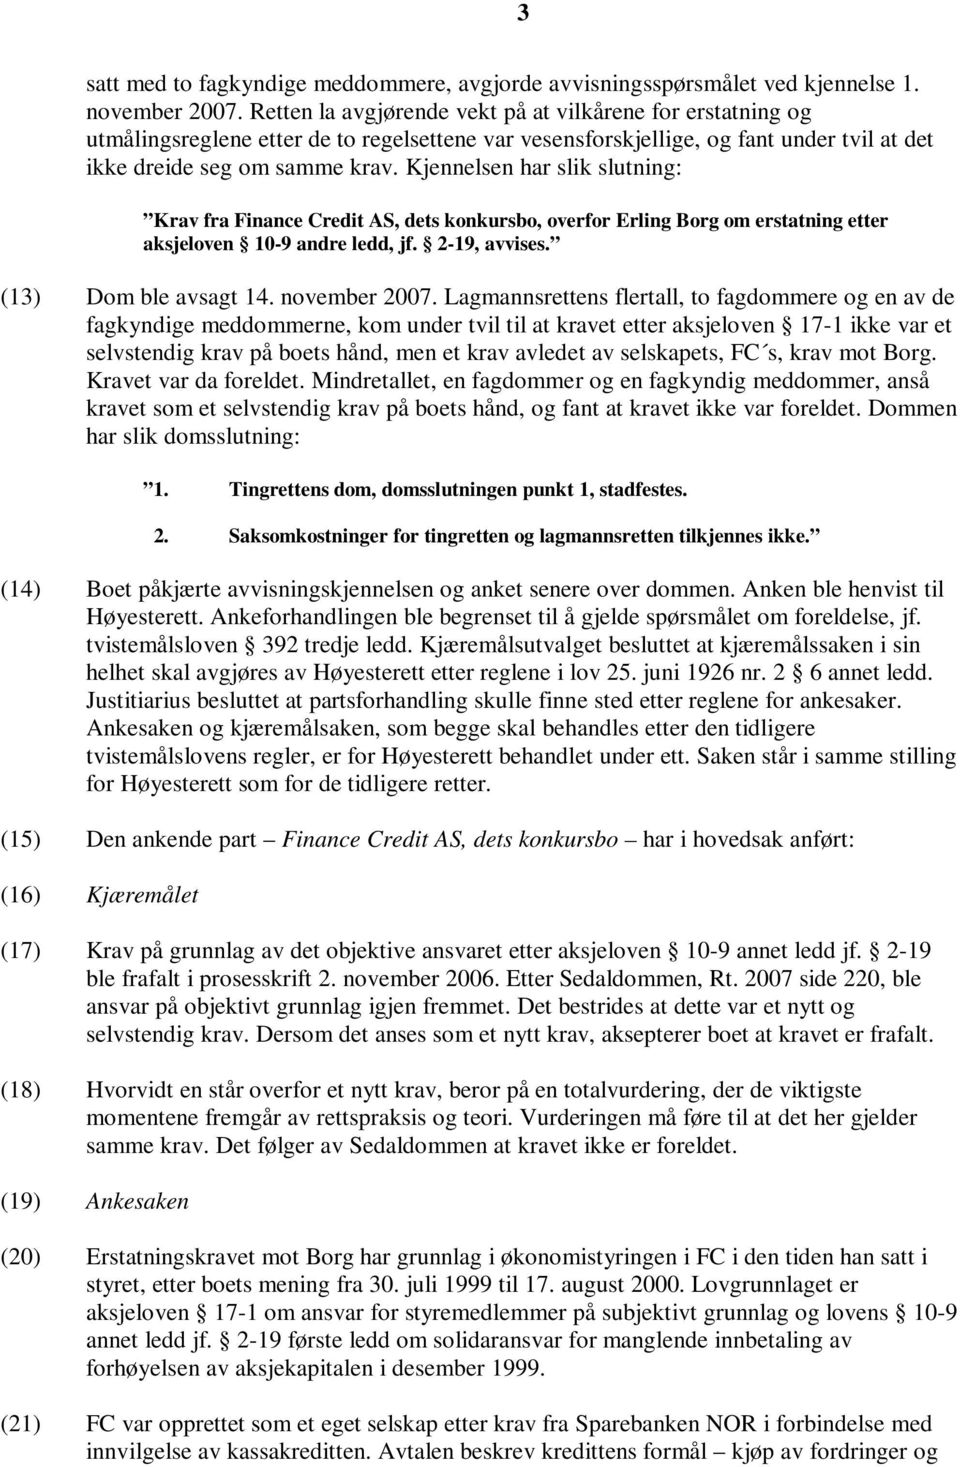 Kjennelsen har slik slutning: Krav fra Finance Credit AS, dets konkursbo, overfor Erling Borg om erstatning etter aksjeloven 10-9 andre ledd, jf. 2-19, avvises. (13) Dom ble avsagt 14. november 2007.